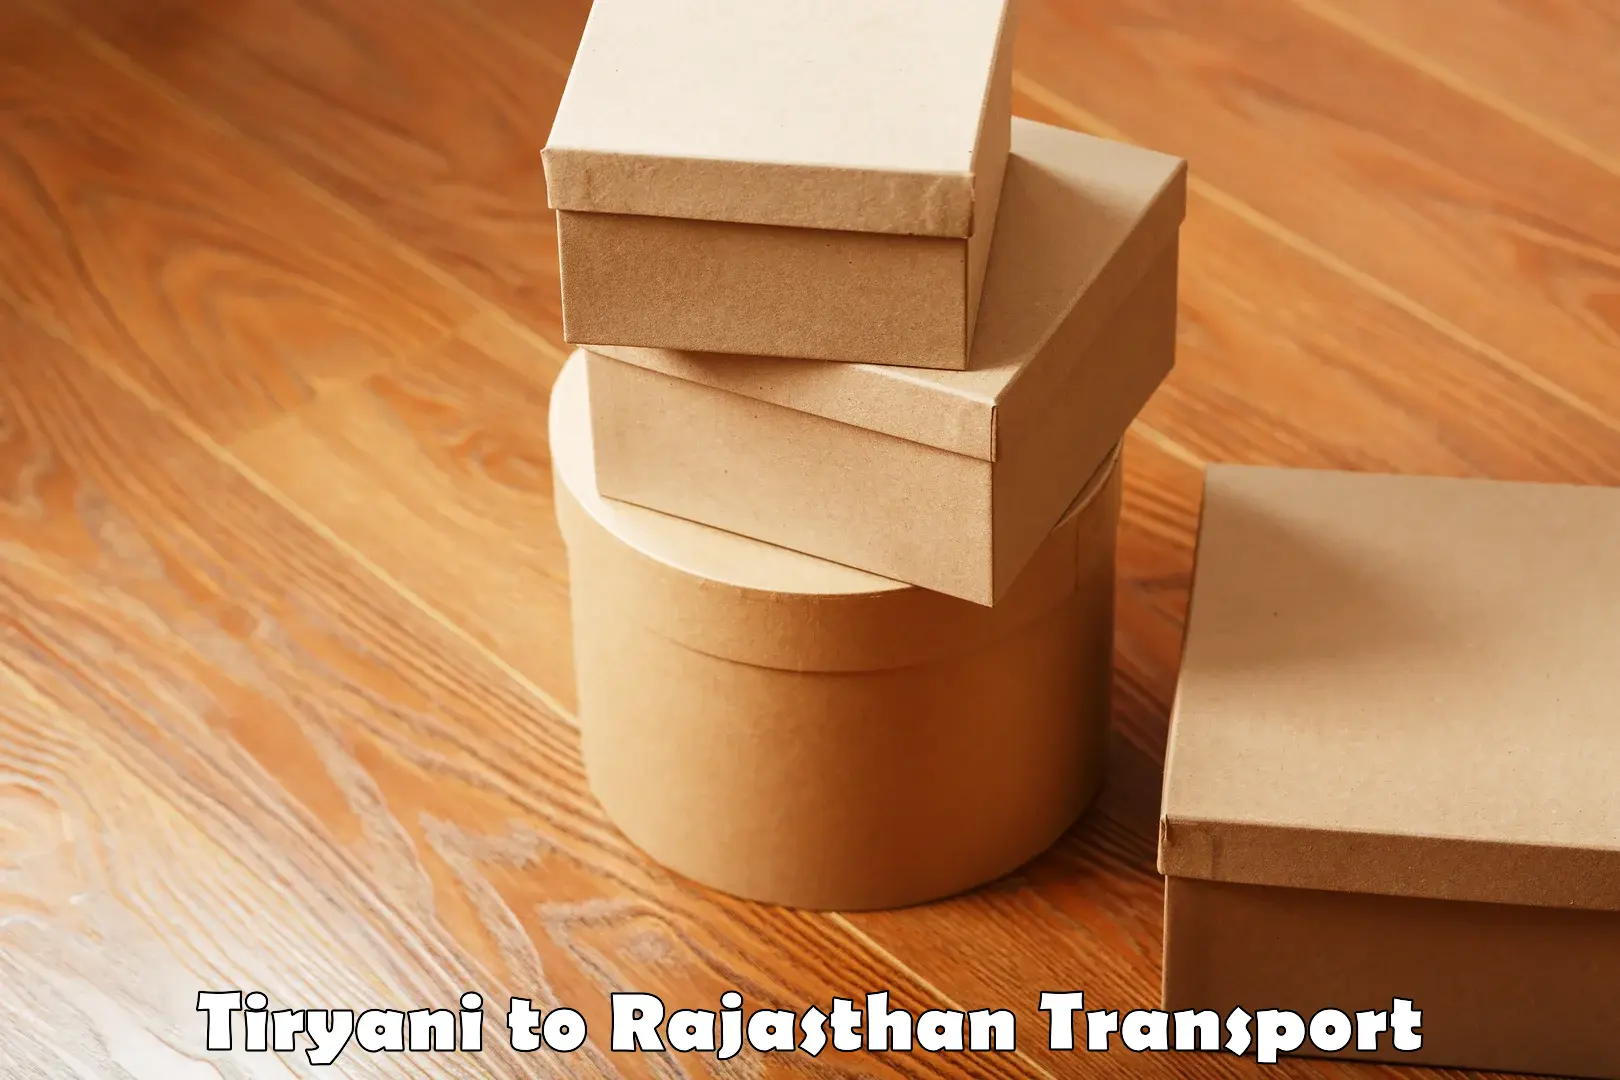 Pick up transport service Tiryani to Rajasthan